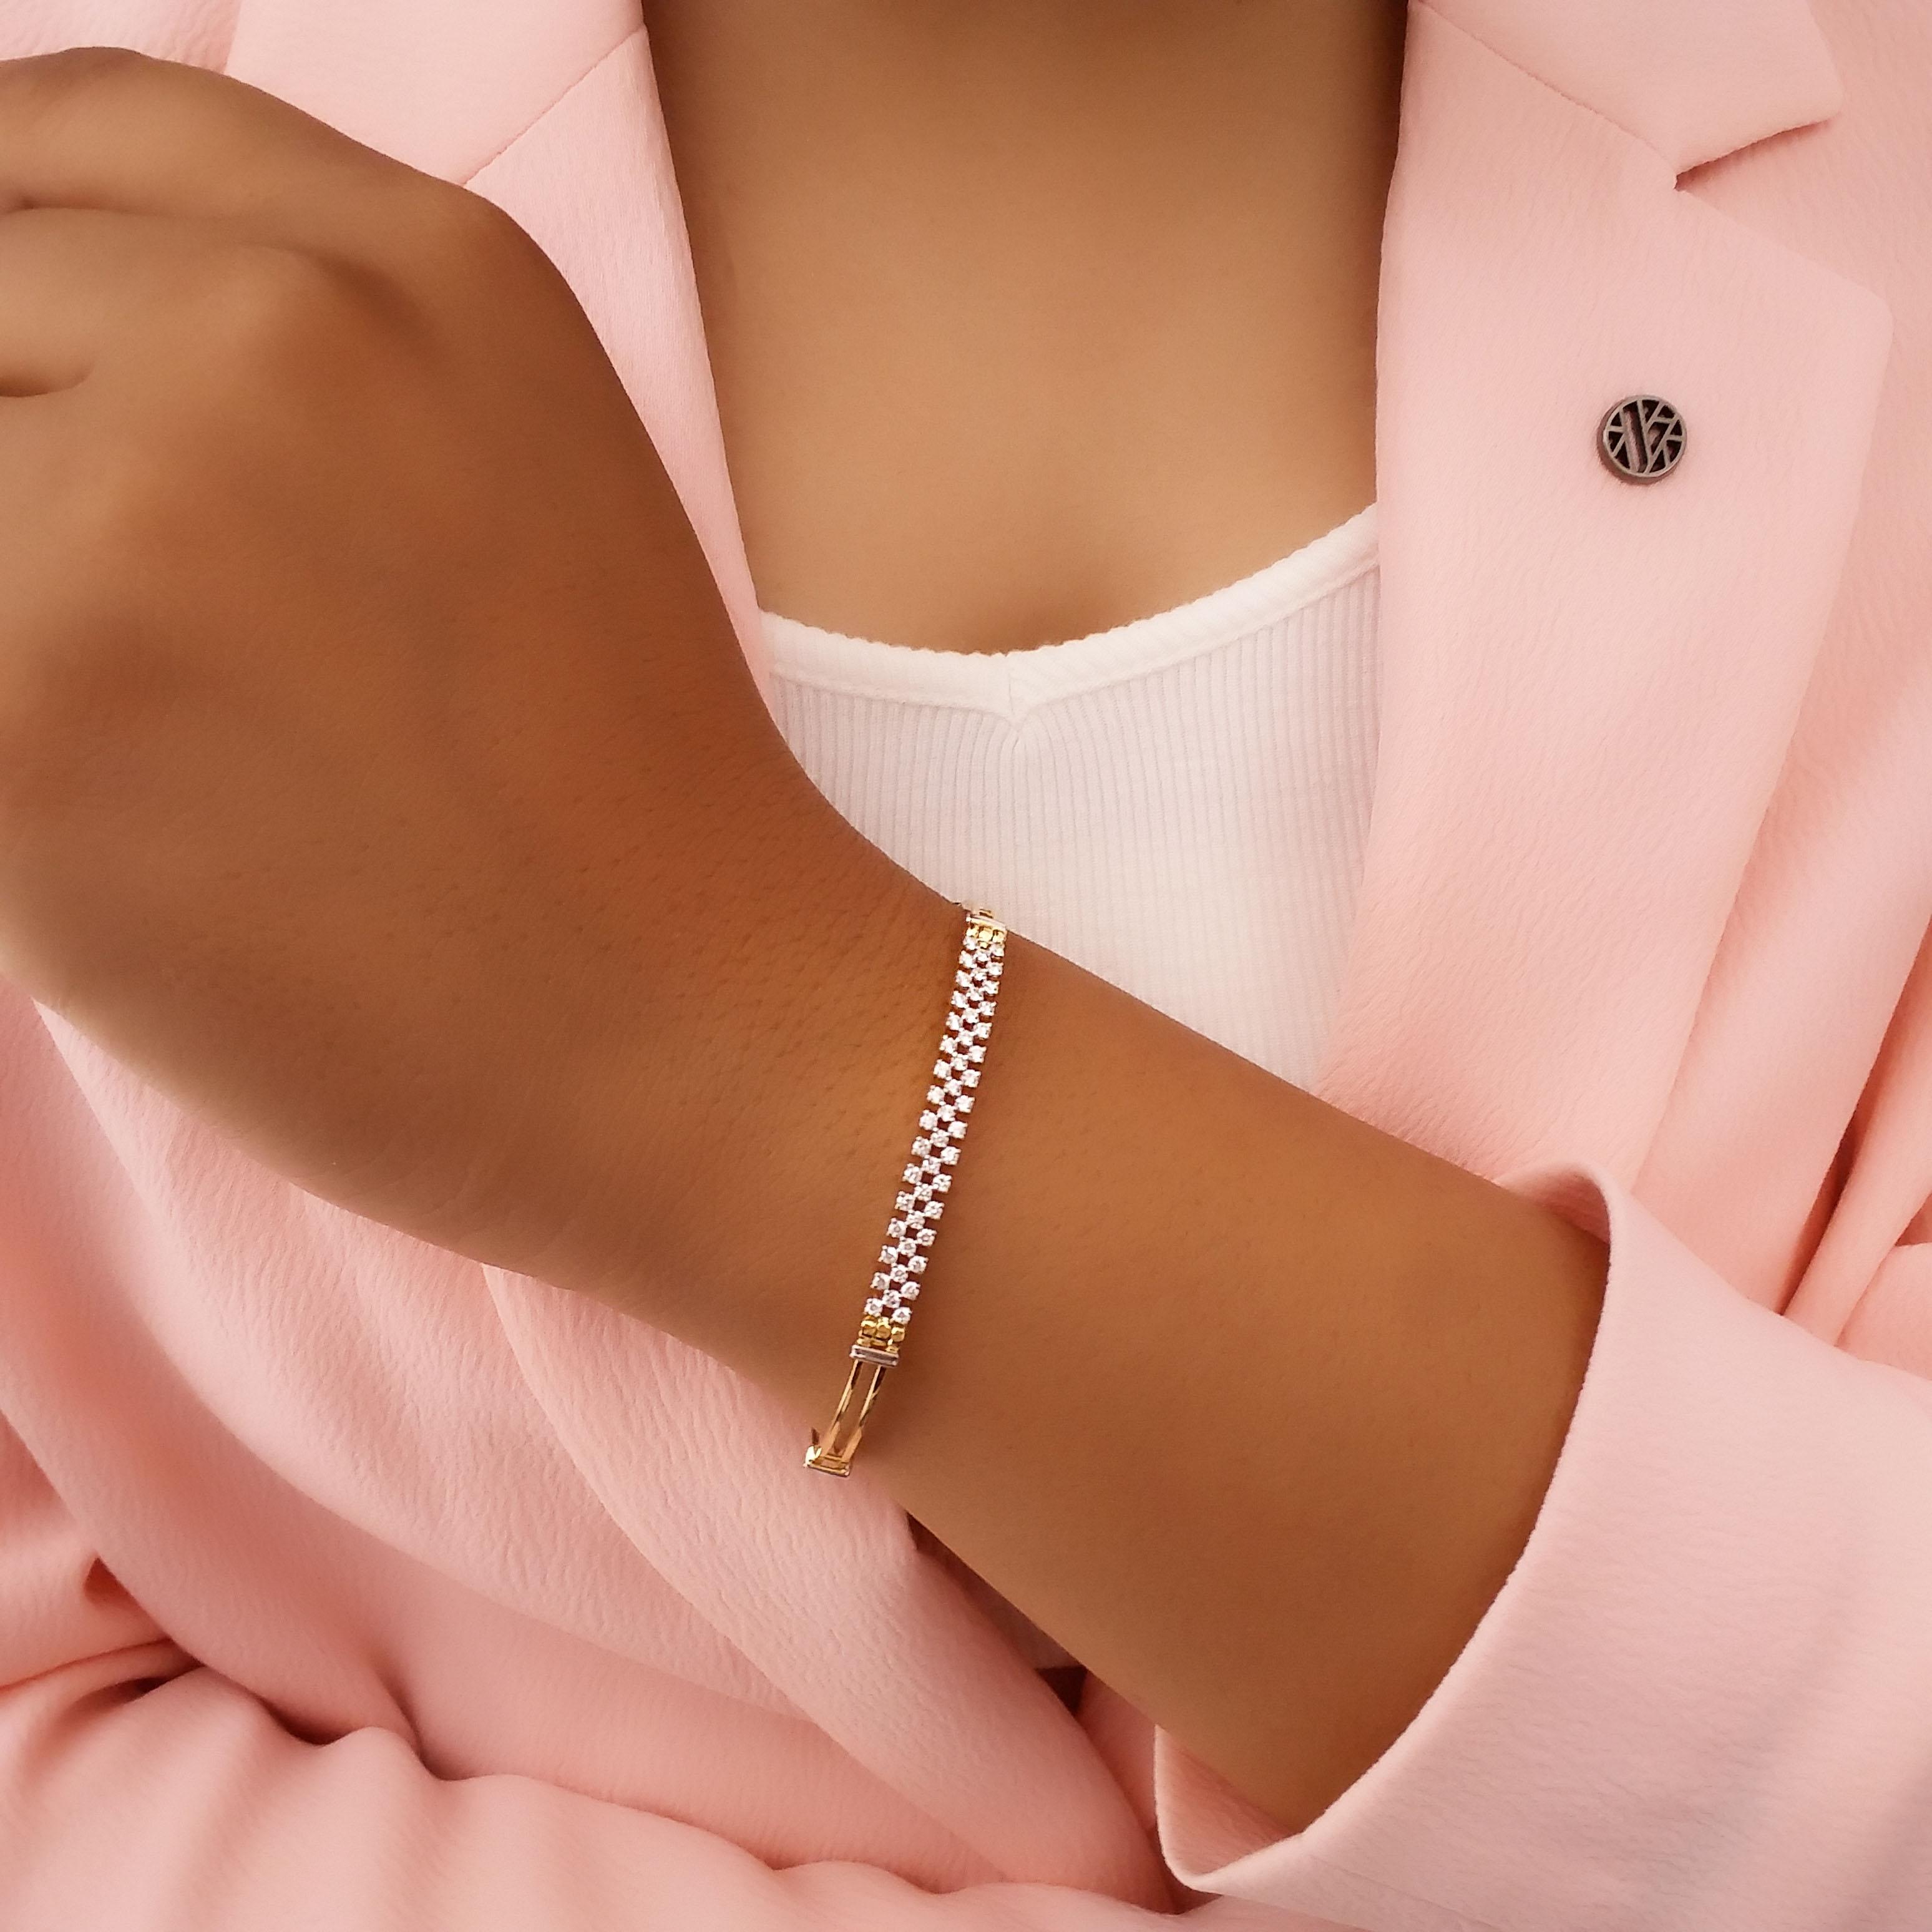 Share more than 148 diamond bracelet for women best